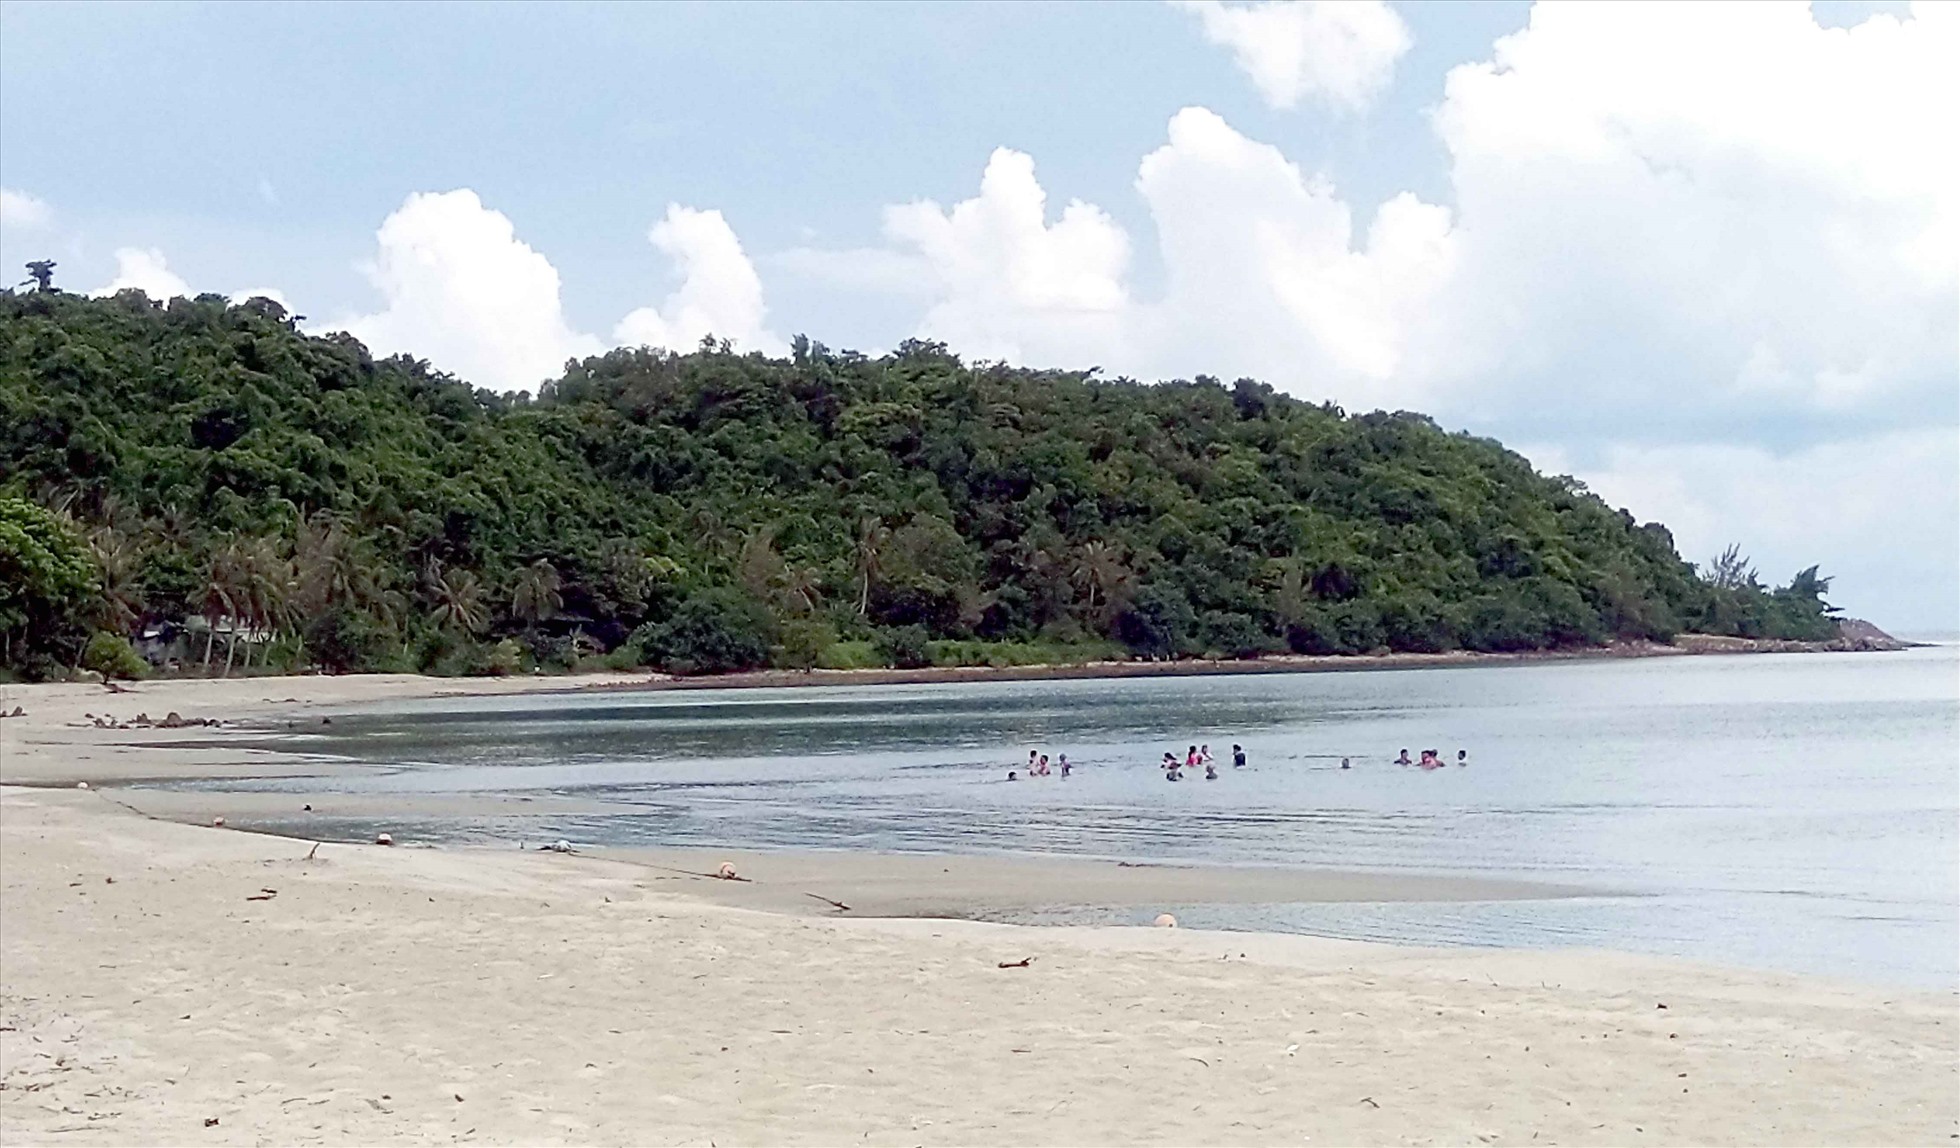 Quần đảo nổi tiếng Kiên Giang, xưa là sào huyệt của cướp biển, nay cảnh đầu tiên thấy là một bãi biển đẹp- Ảnh 4.